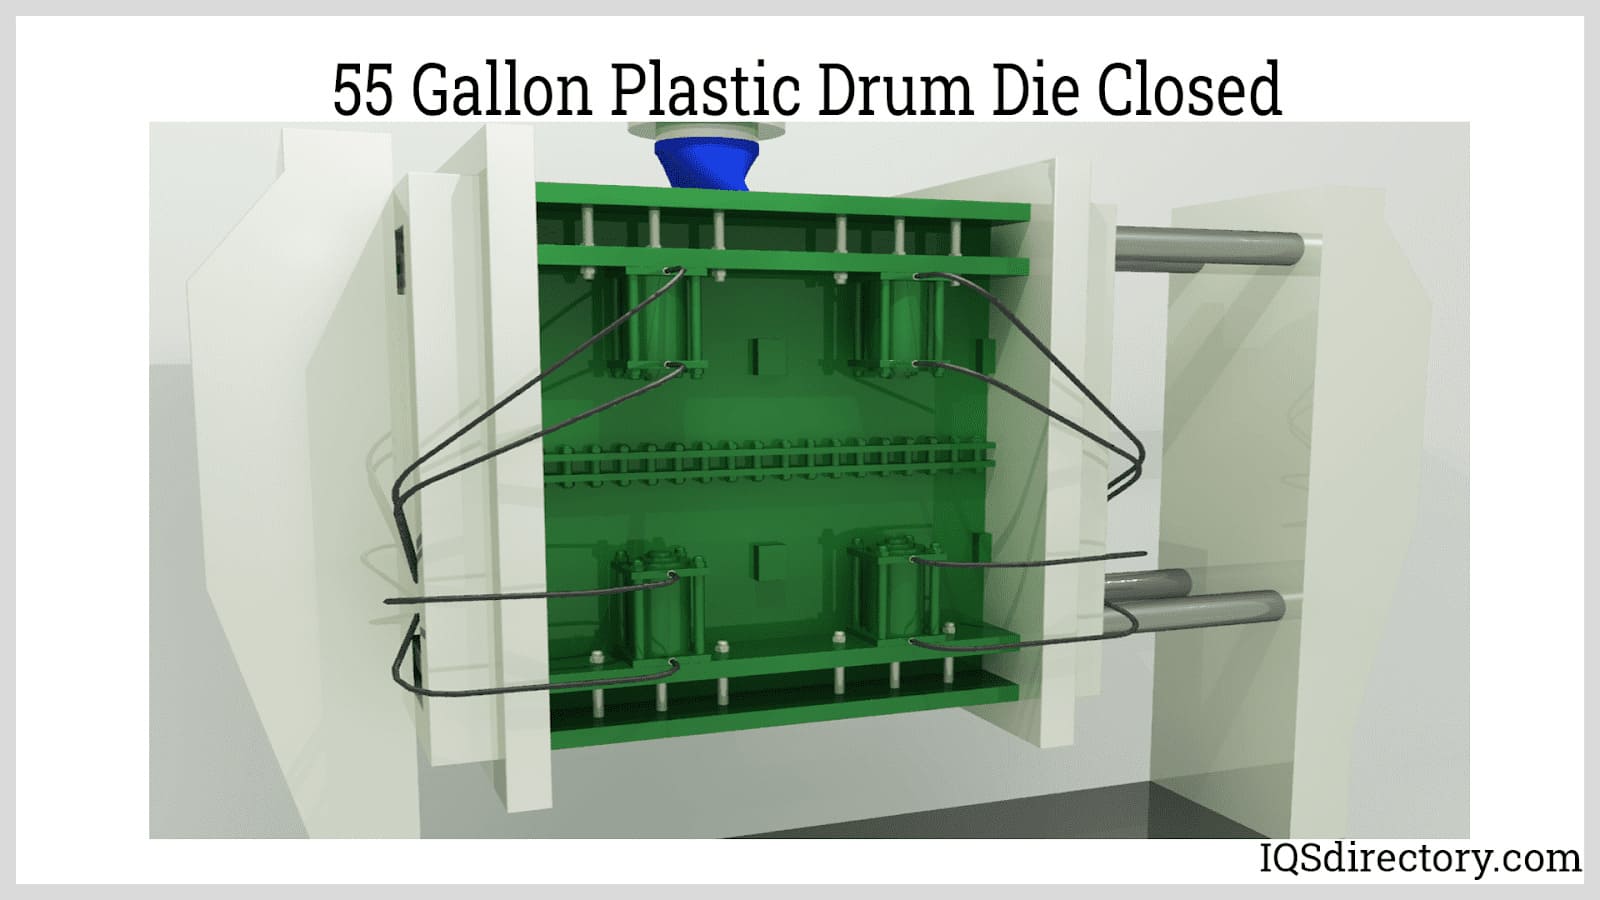 55 Gallon Plastic Drum into Drum Die Closed